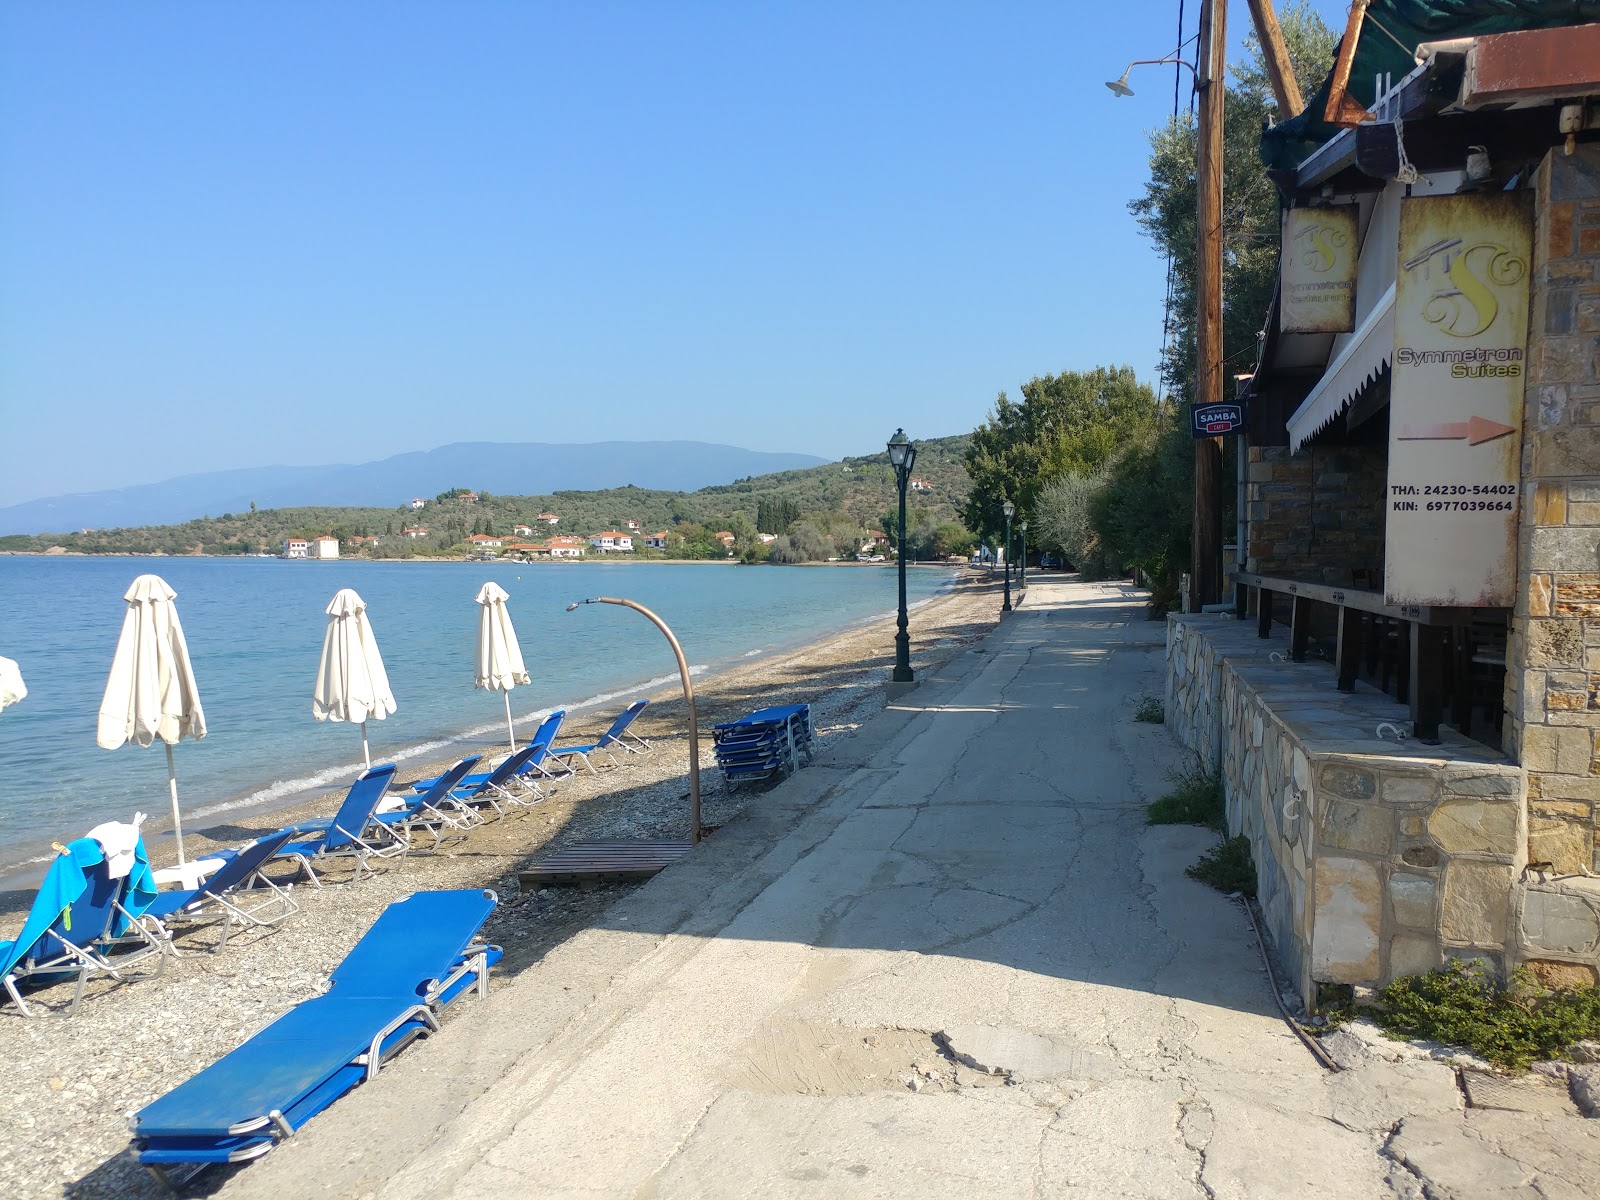 Zdjęcie Kalamos beach z poziomem czystości głoska bezdźwięczna